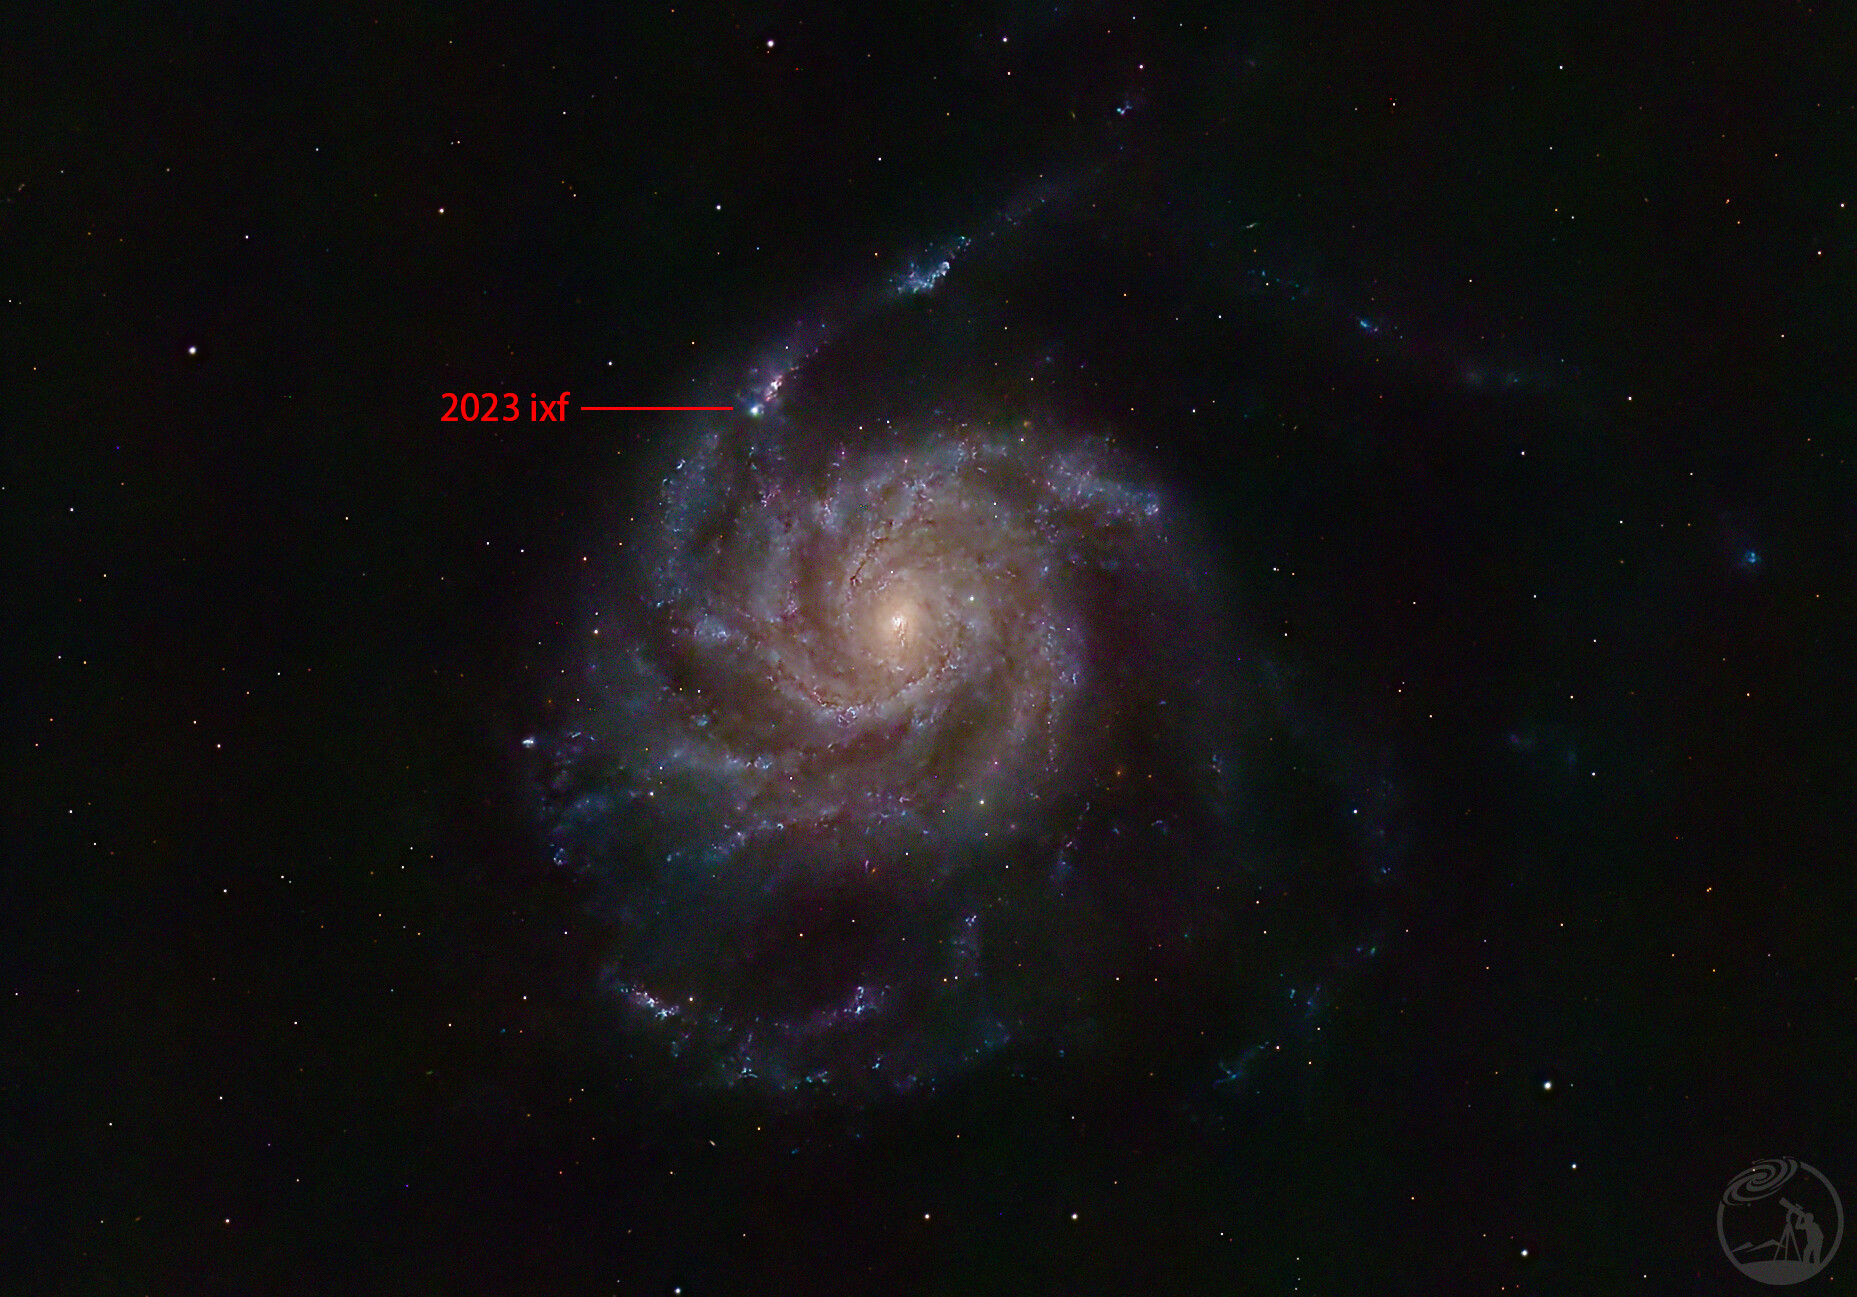 M101风车星系+2023ixf超新星